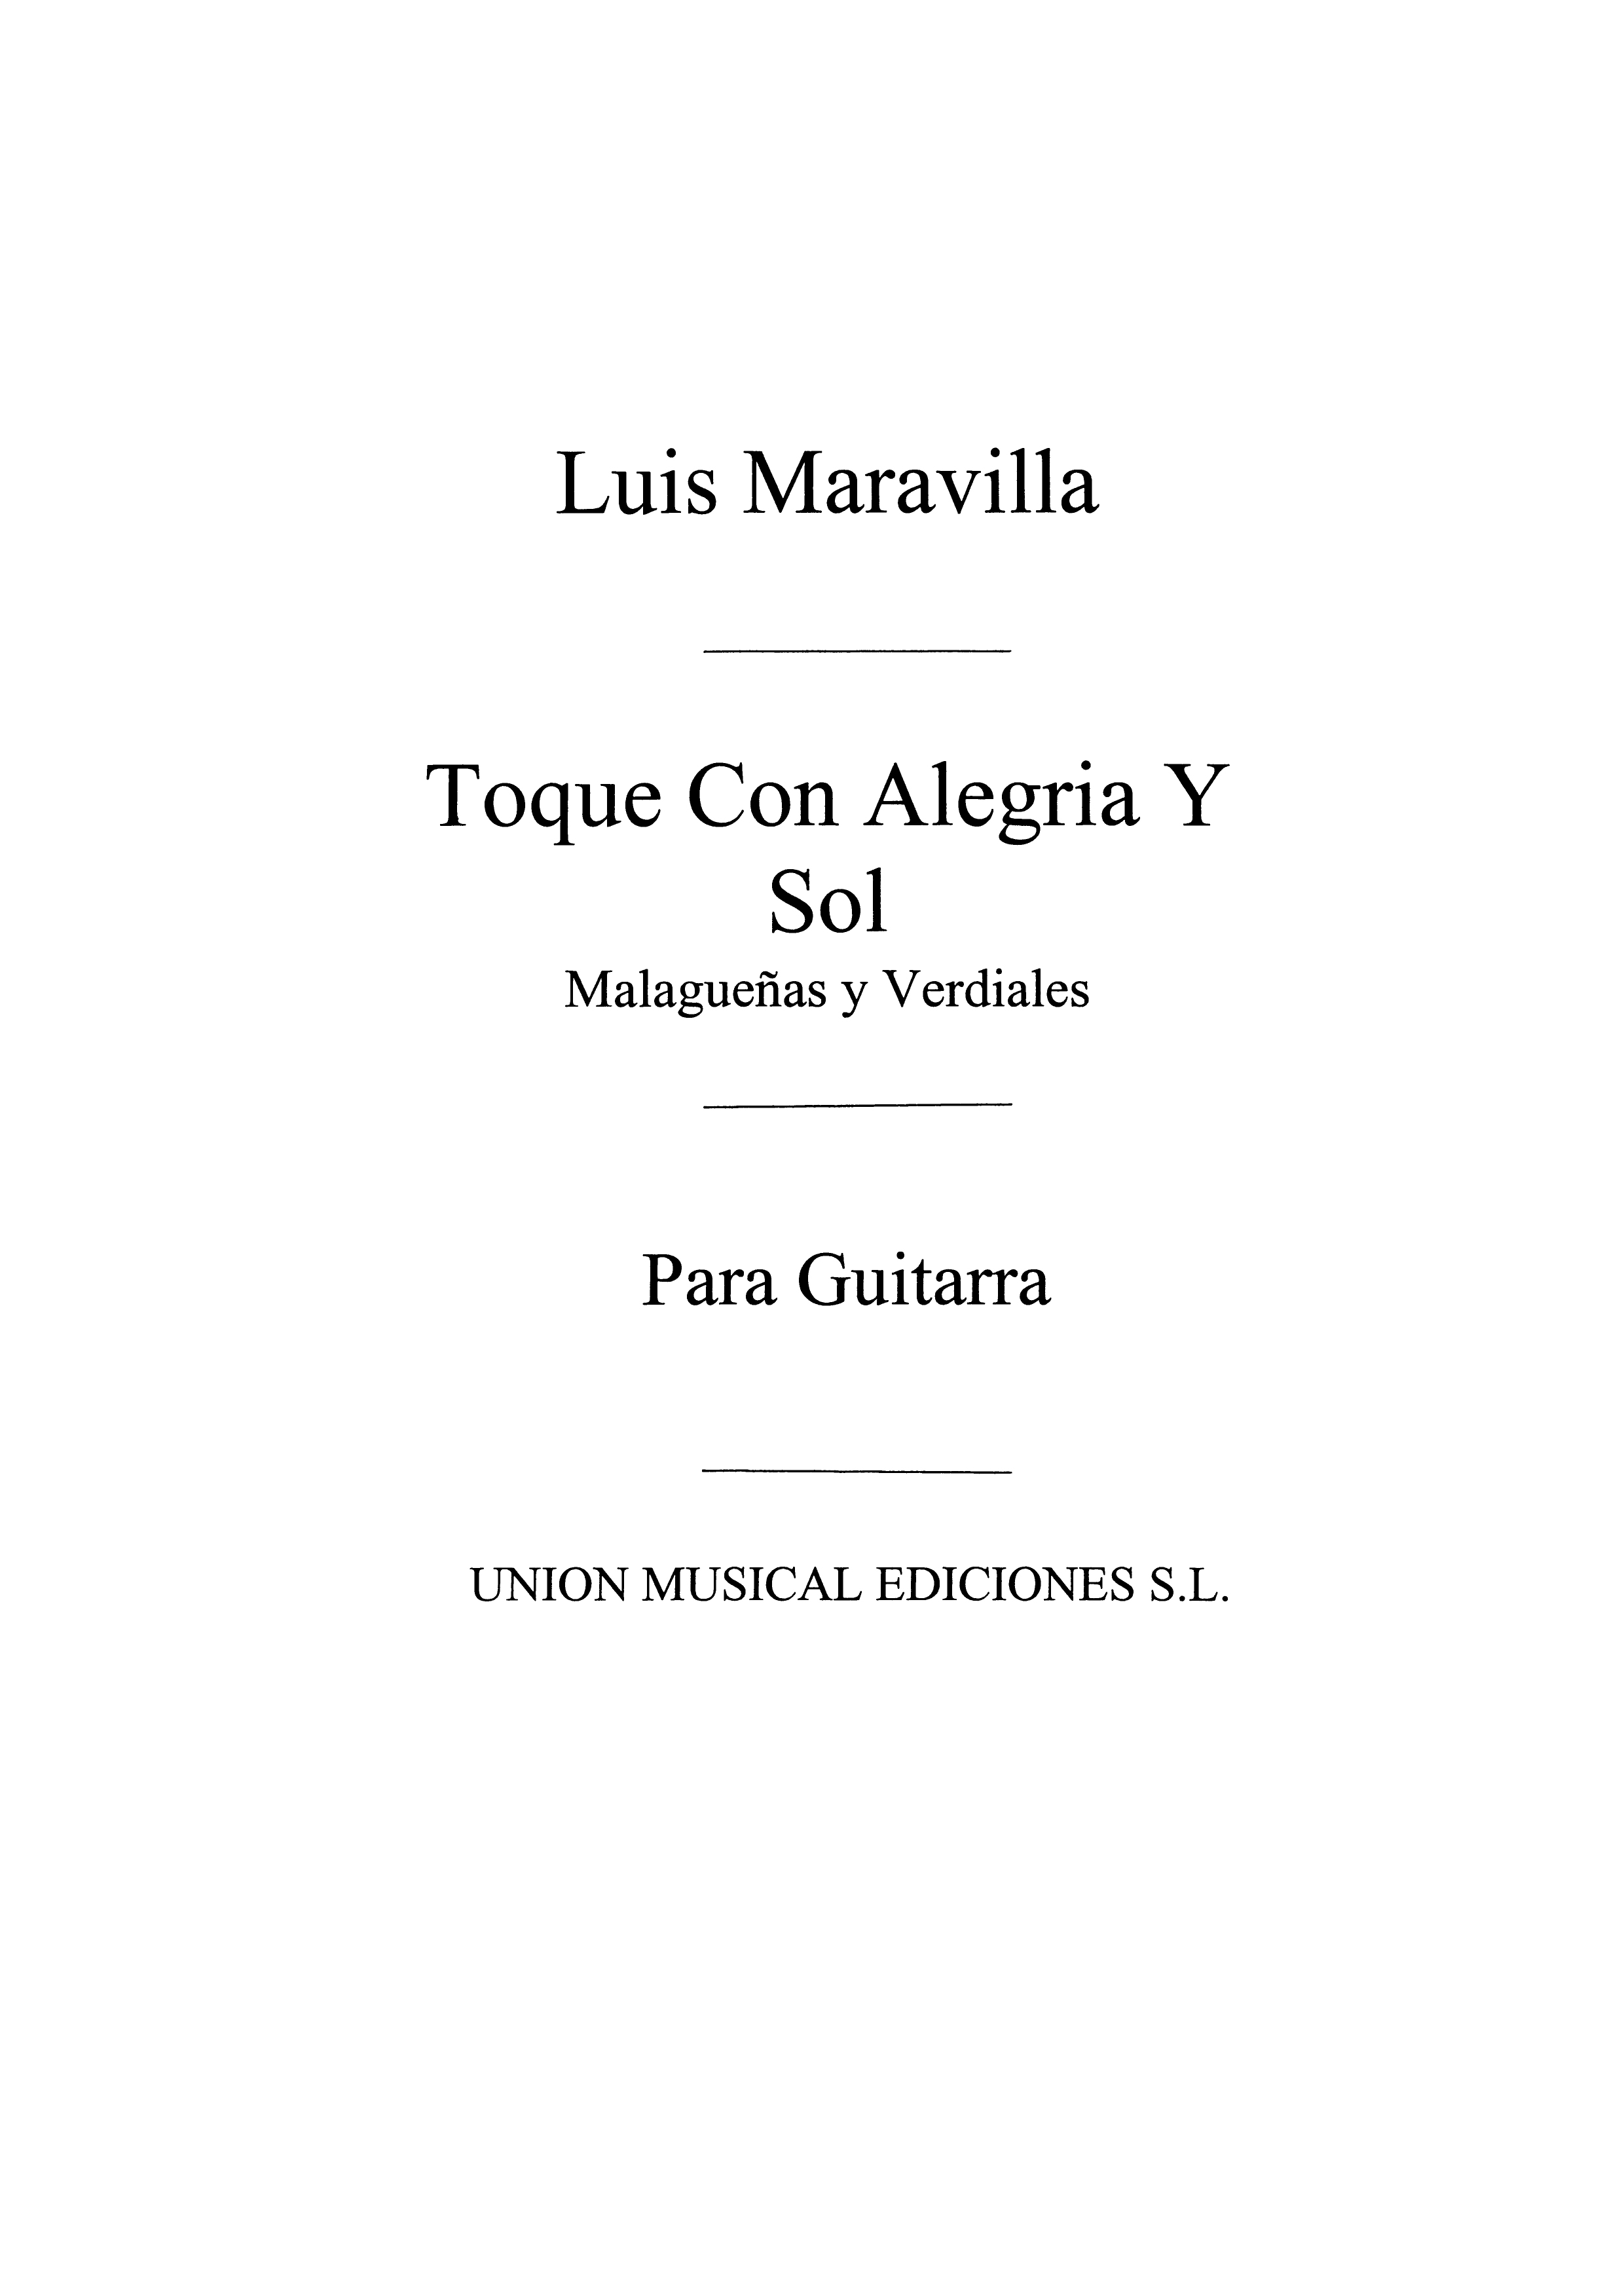 Luis Maravilla: Toque Con Alegria Y Sol Malaguenas Y Verdiales: Guitar: